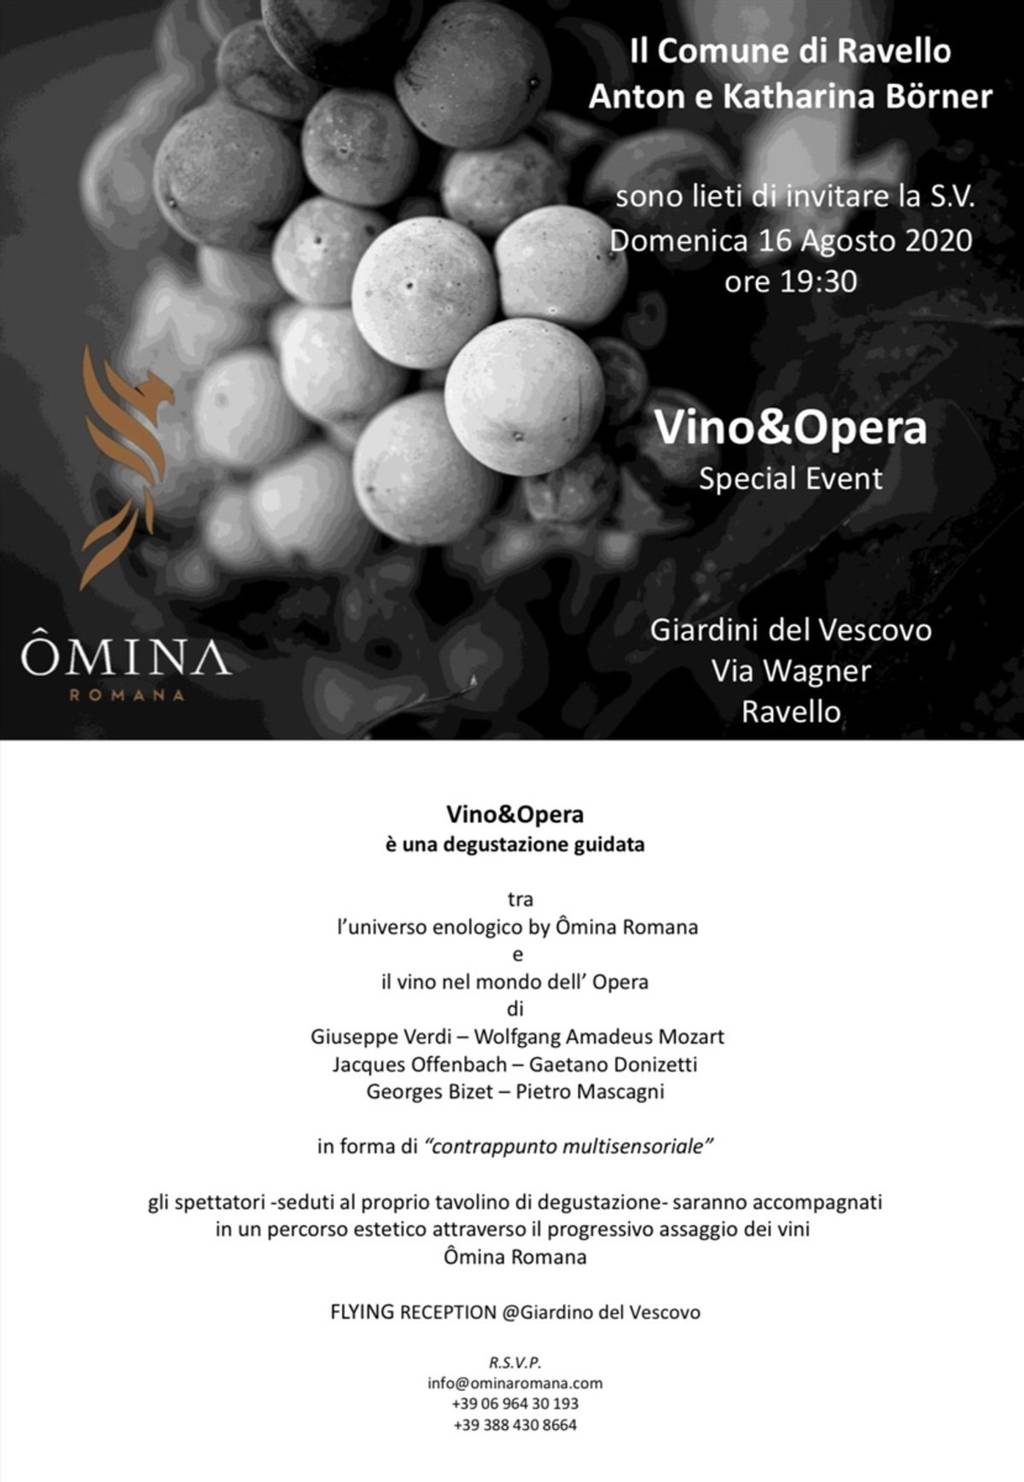 Vino & Opera: è una degustazione guidata